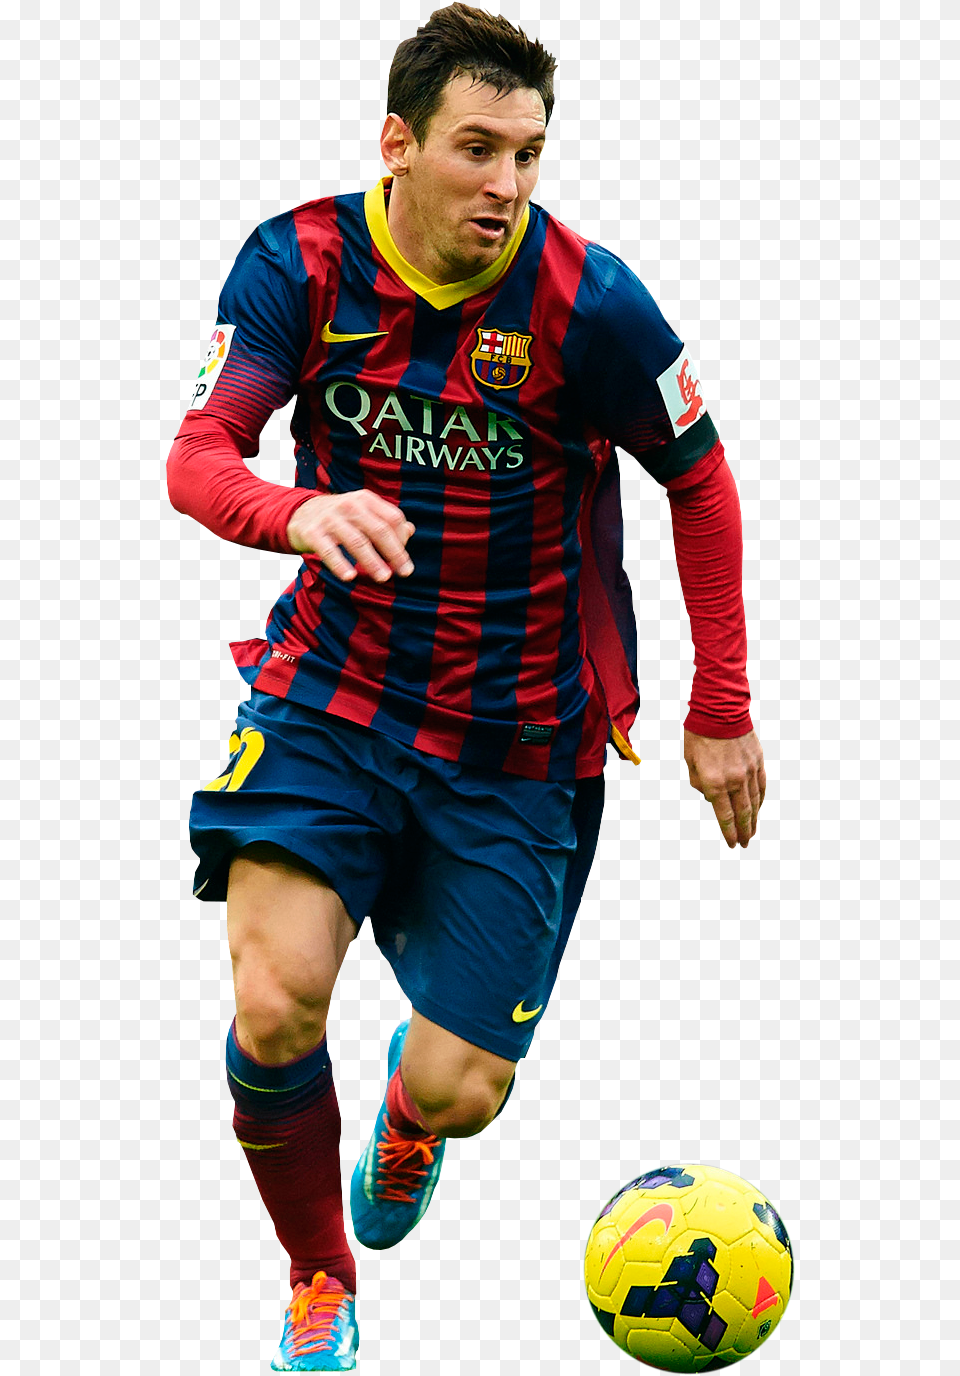 Cracks En Dise241o Lionel Messi Messi 2014, Adult, Sphere, Soccer Ball, Soccer Png Image